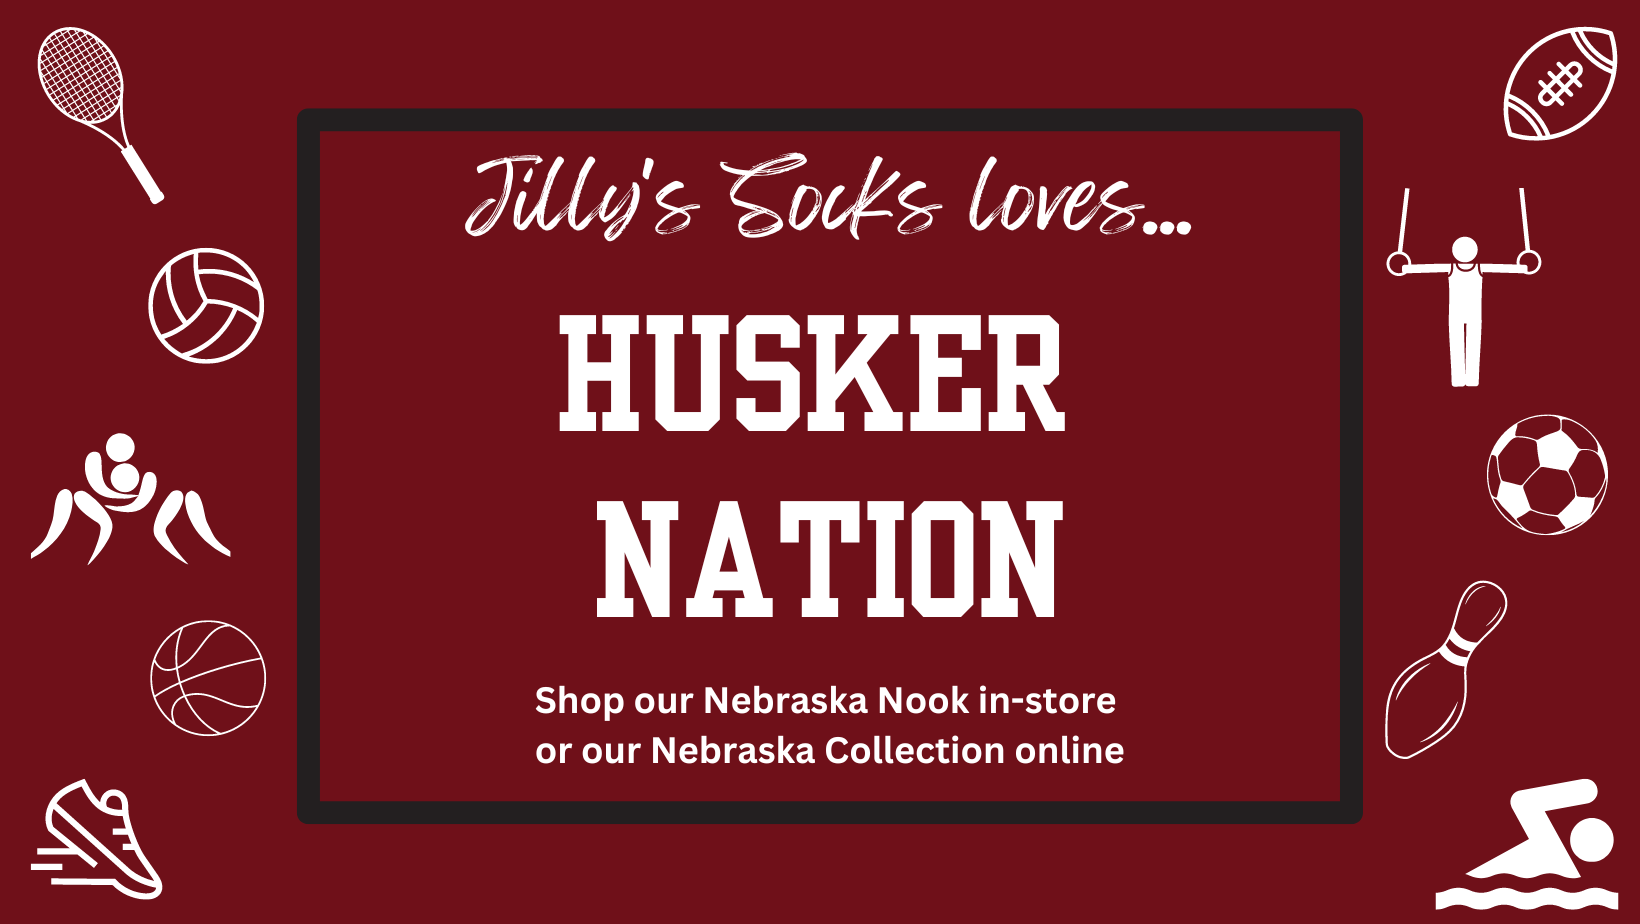 Jilly s socks loves husker nation banner